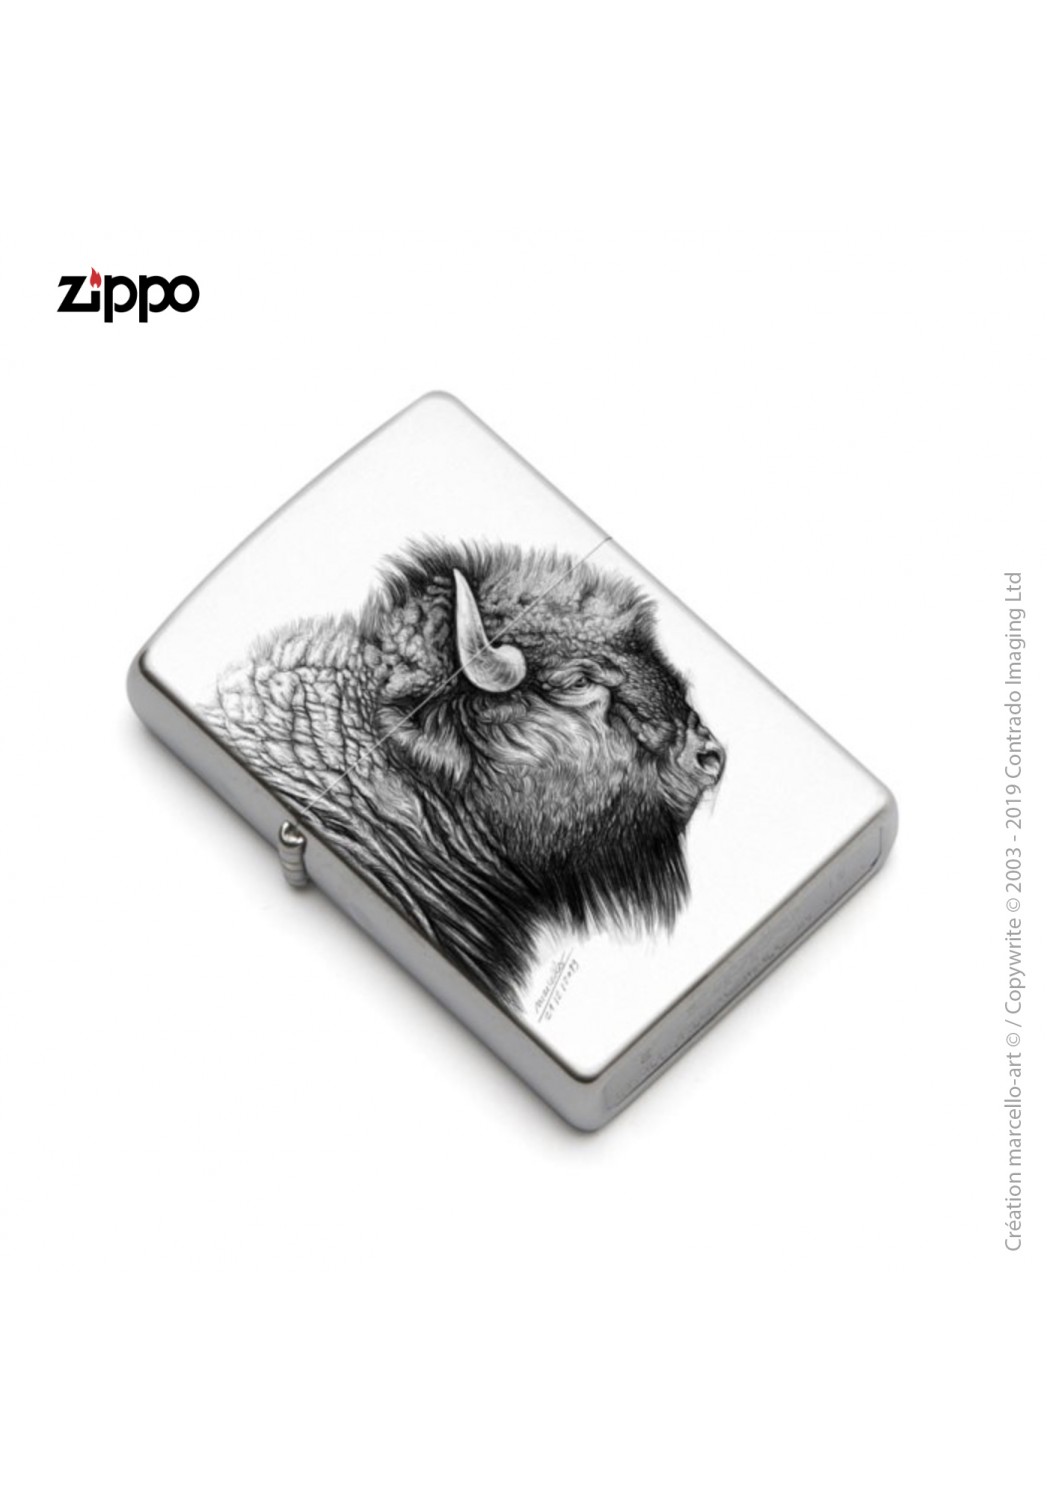 Marcello-art : Accessoires de décoration Zippo 390 bison